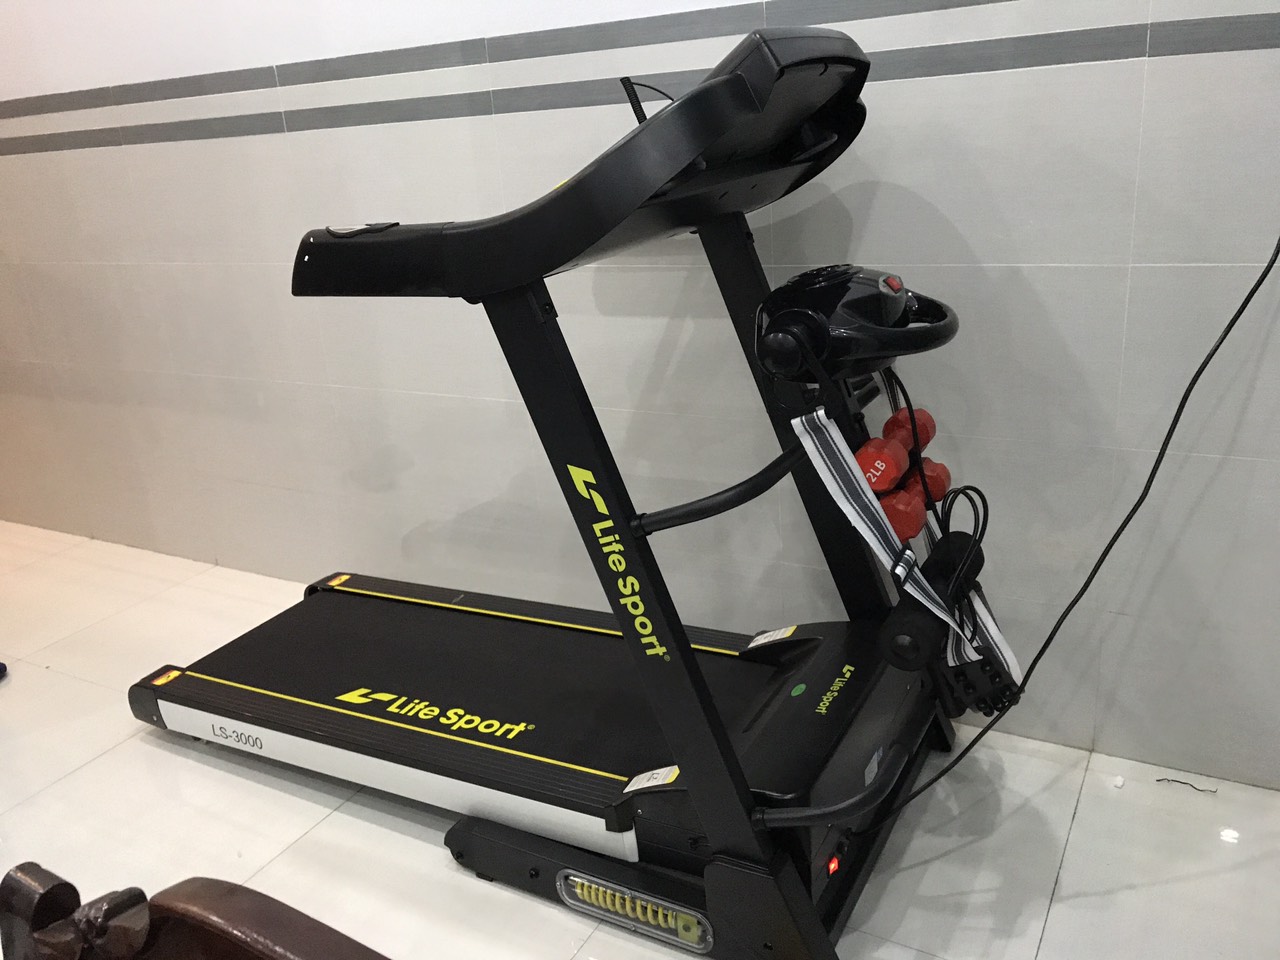 Máy chạy bộ Lifesport LS-3000 - Xây dựng phòng gym ngay tại nhà